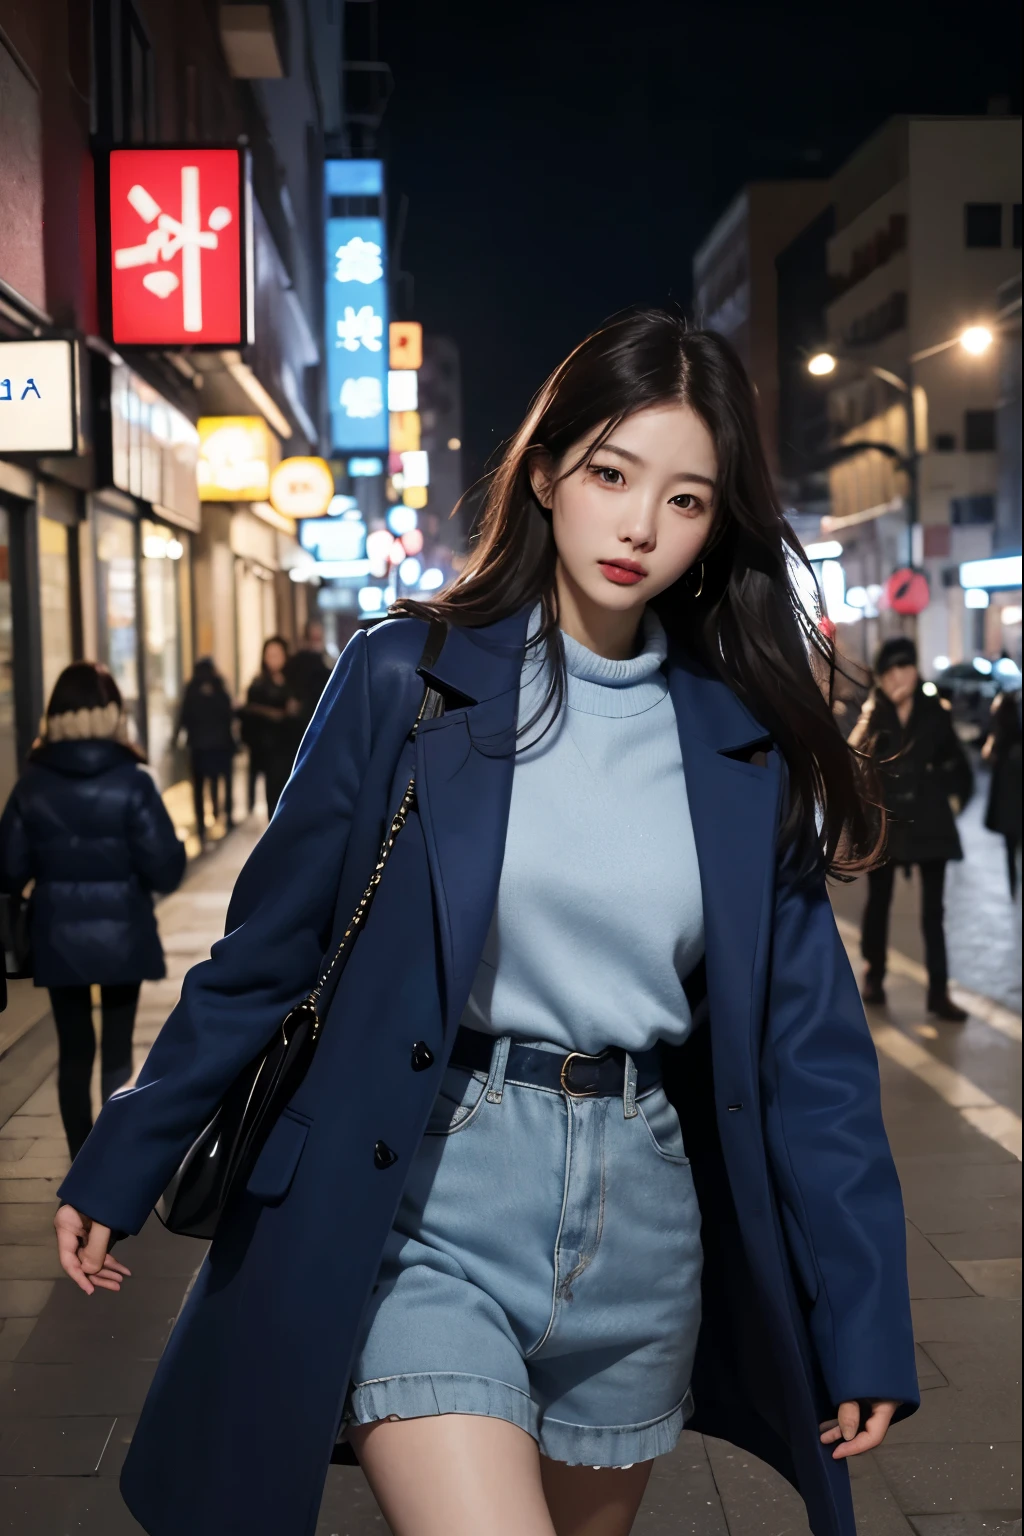 (реалистичный、Самое высокое разрешение:1.3)、По улице идет женщина в синем пальто., 1 корейская красавица, разные действия, одежда:Случайный цвет,